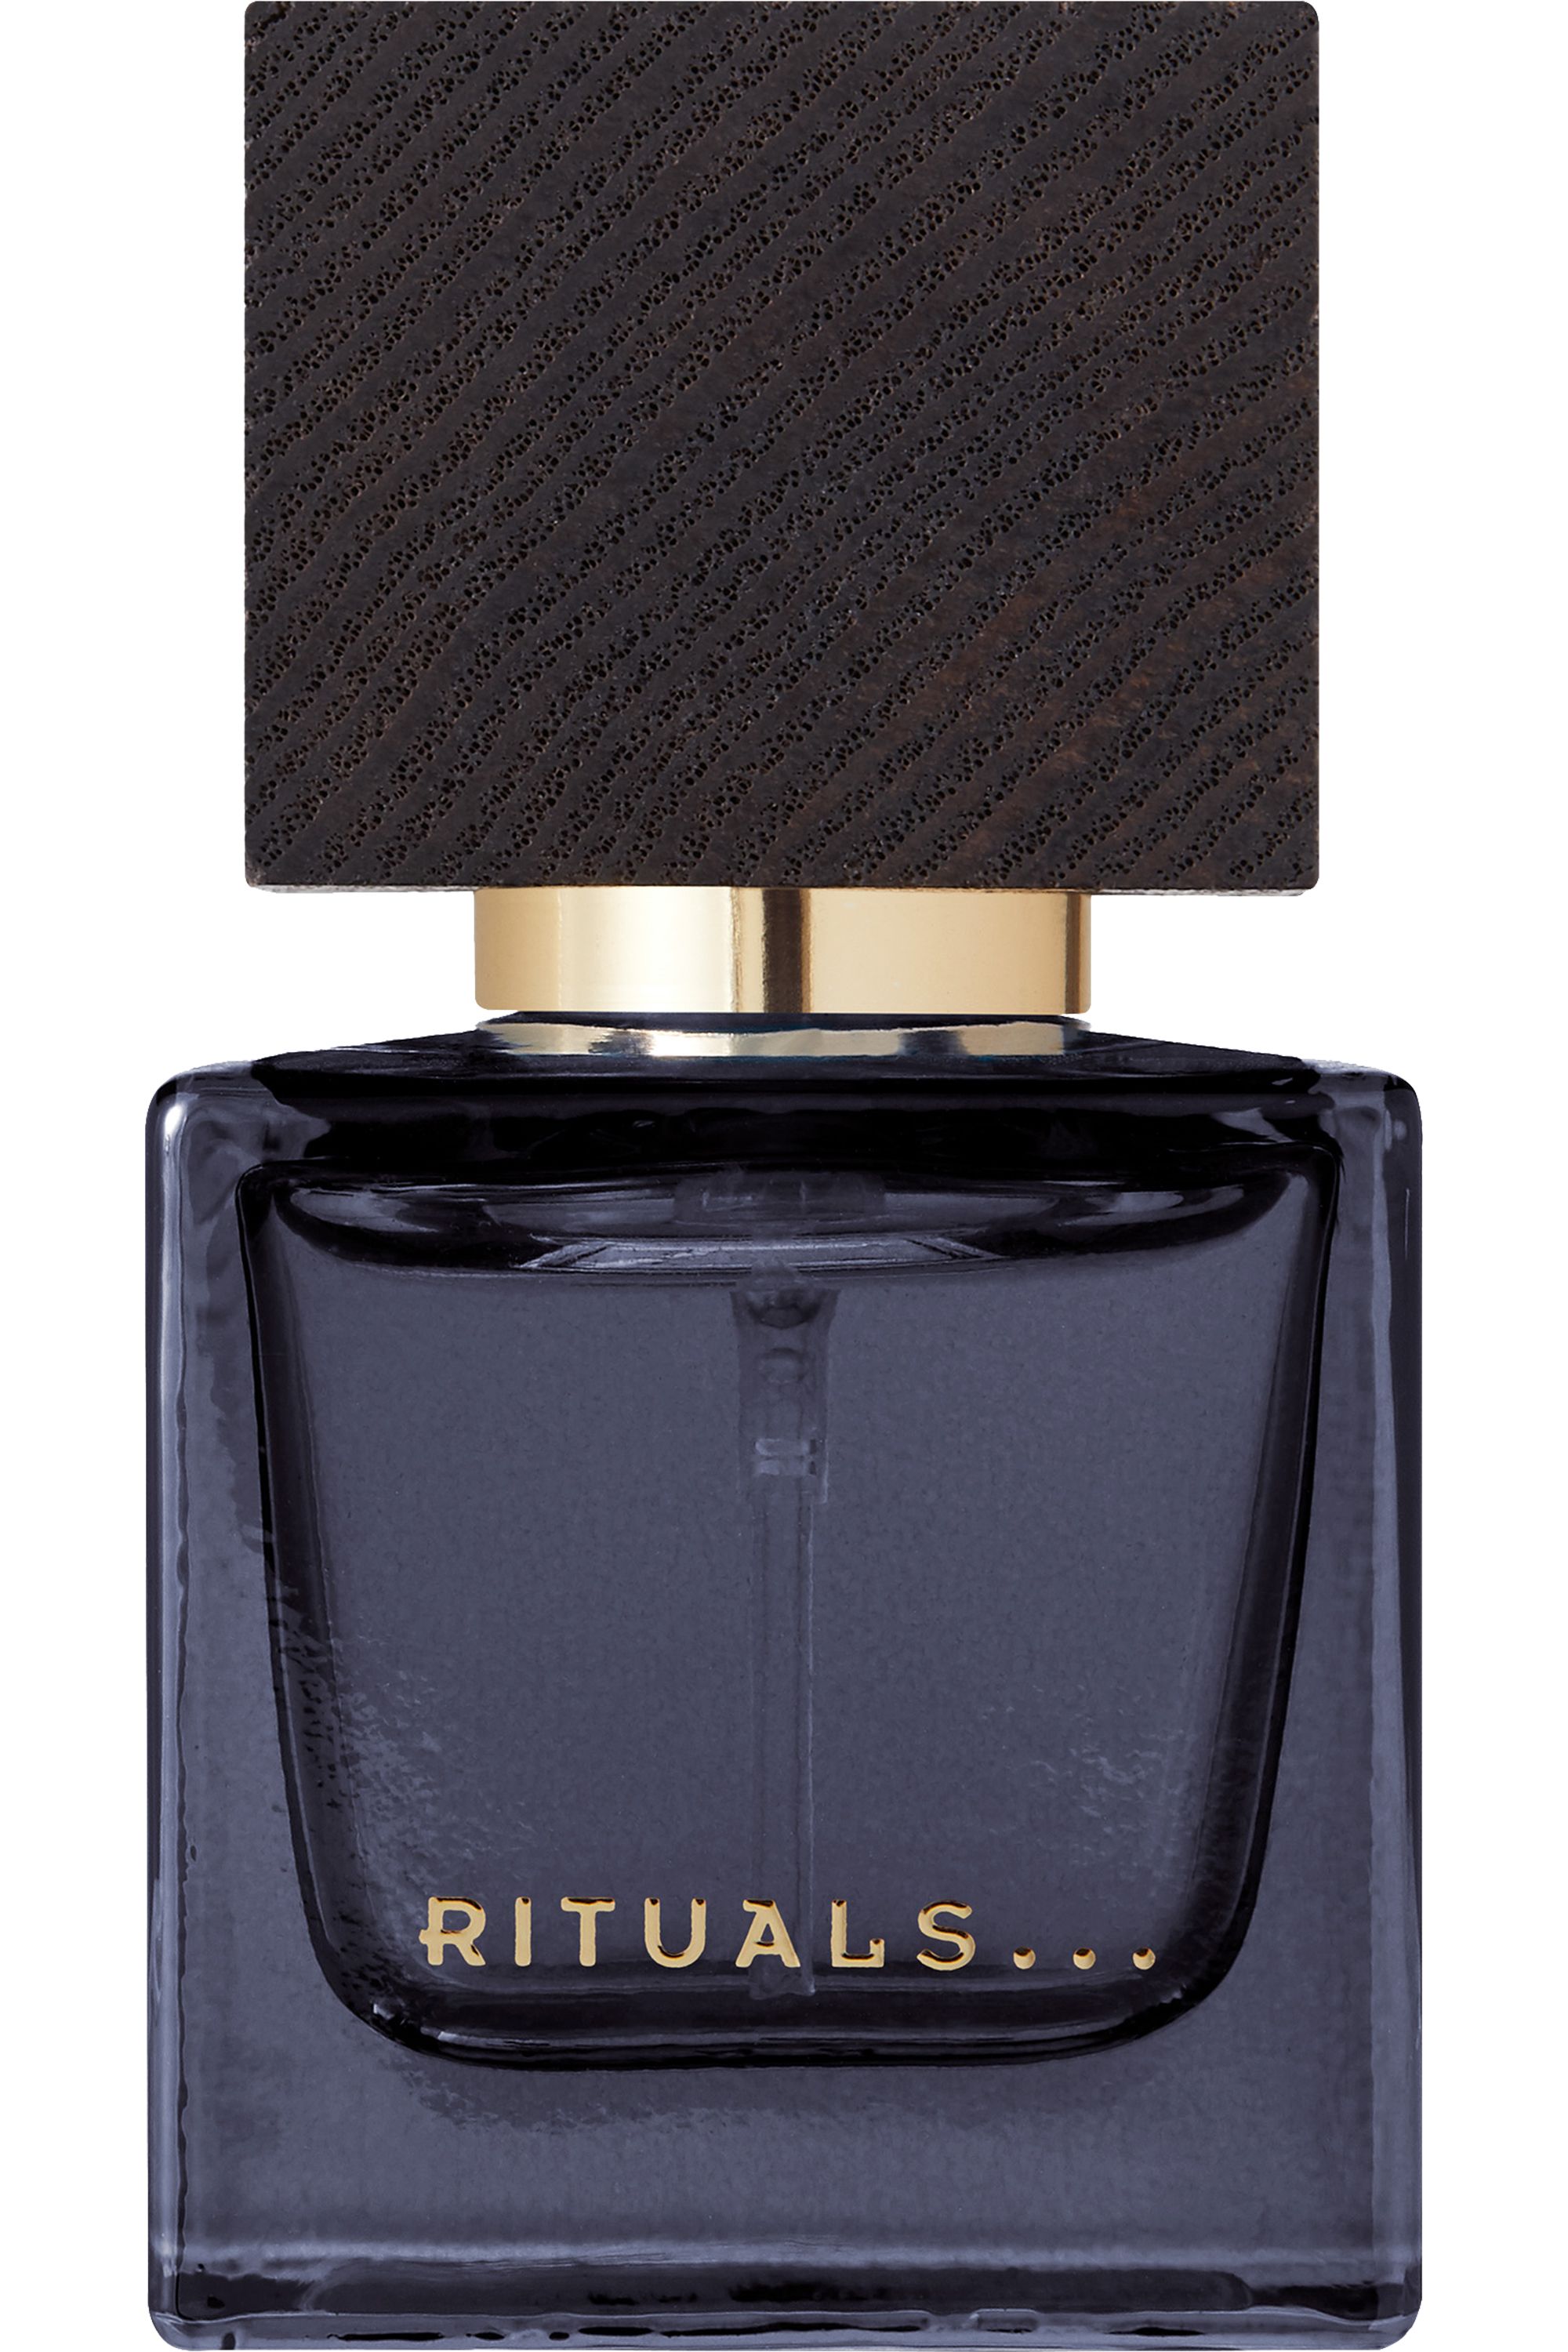 Rituals - Roi d'Orient Eau de Parfum Homme - Blissim